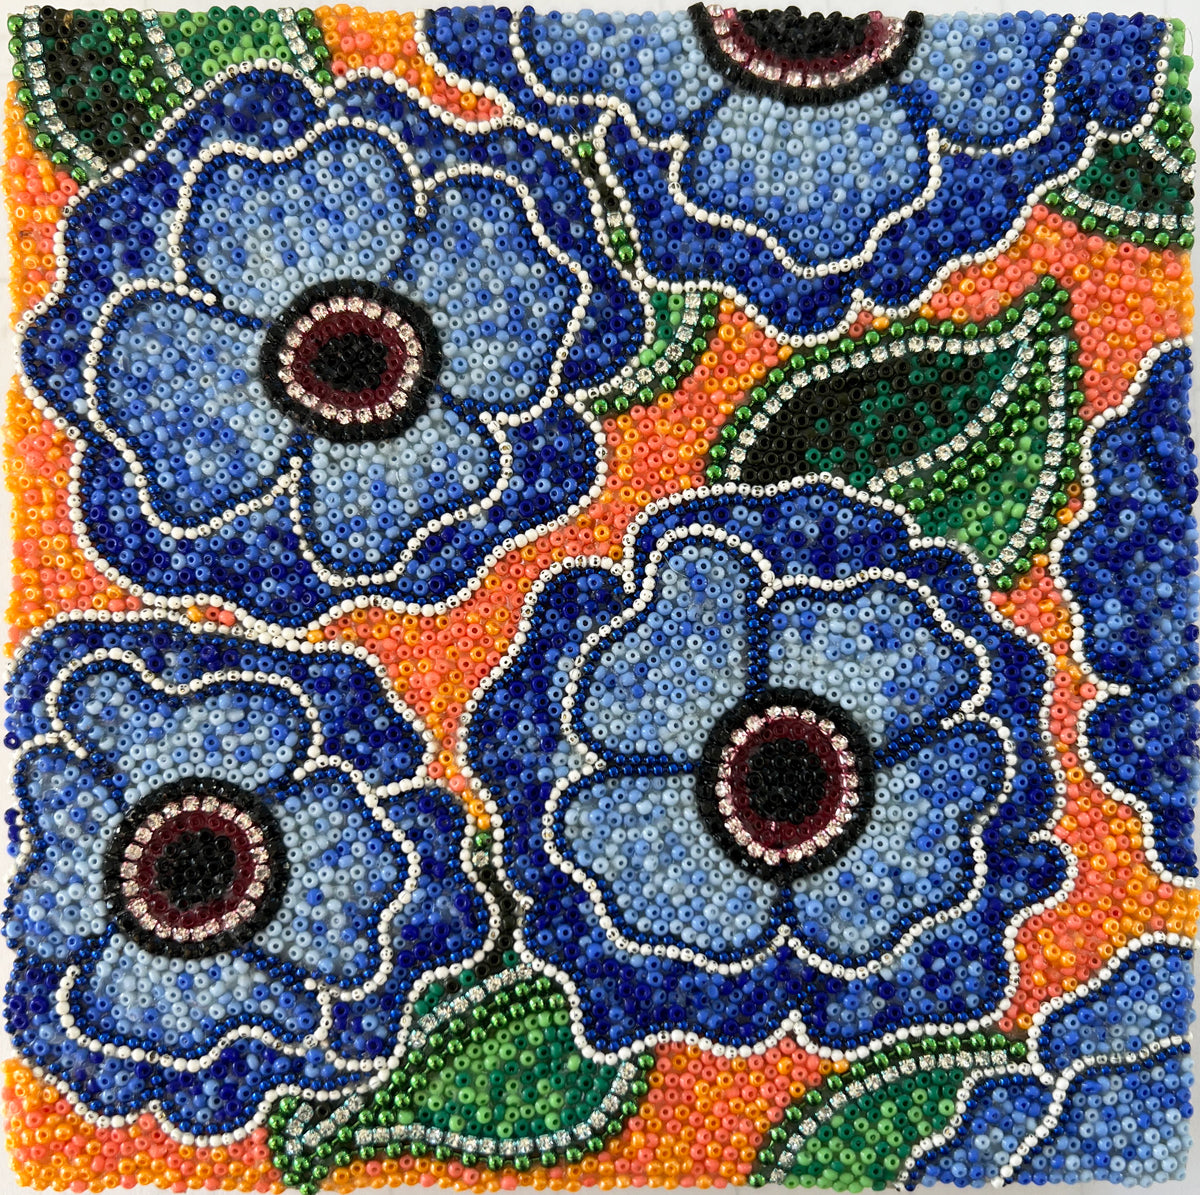 20. Blue Flowers on Orange